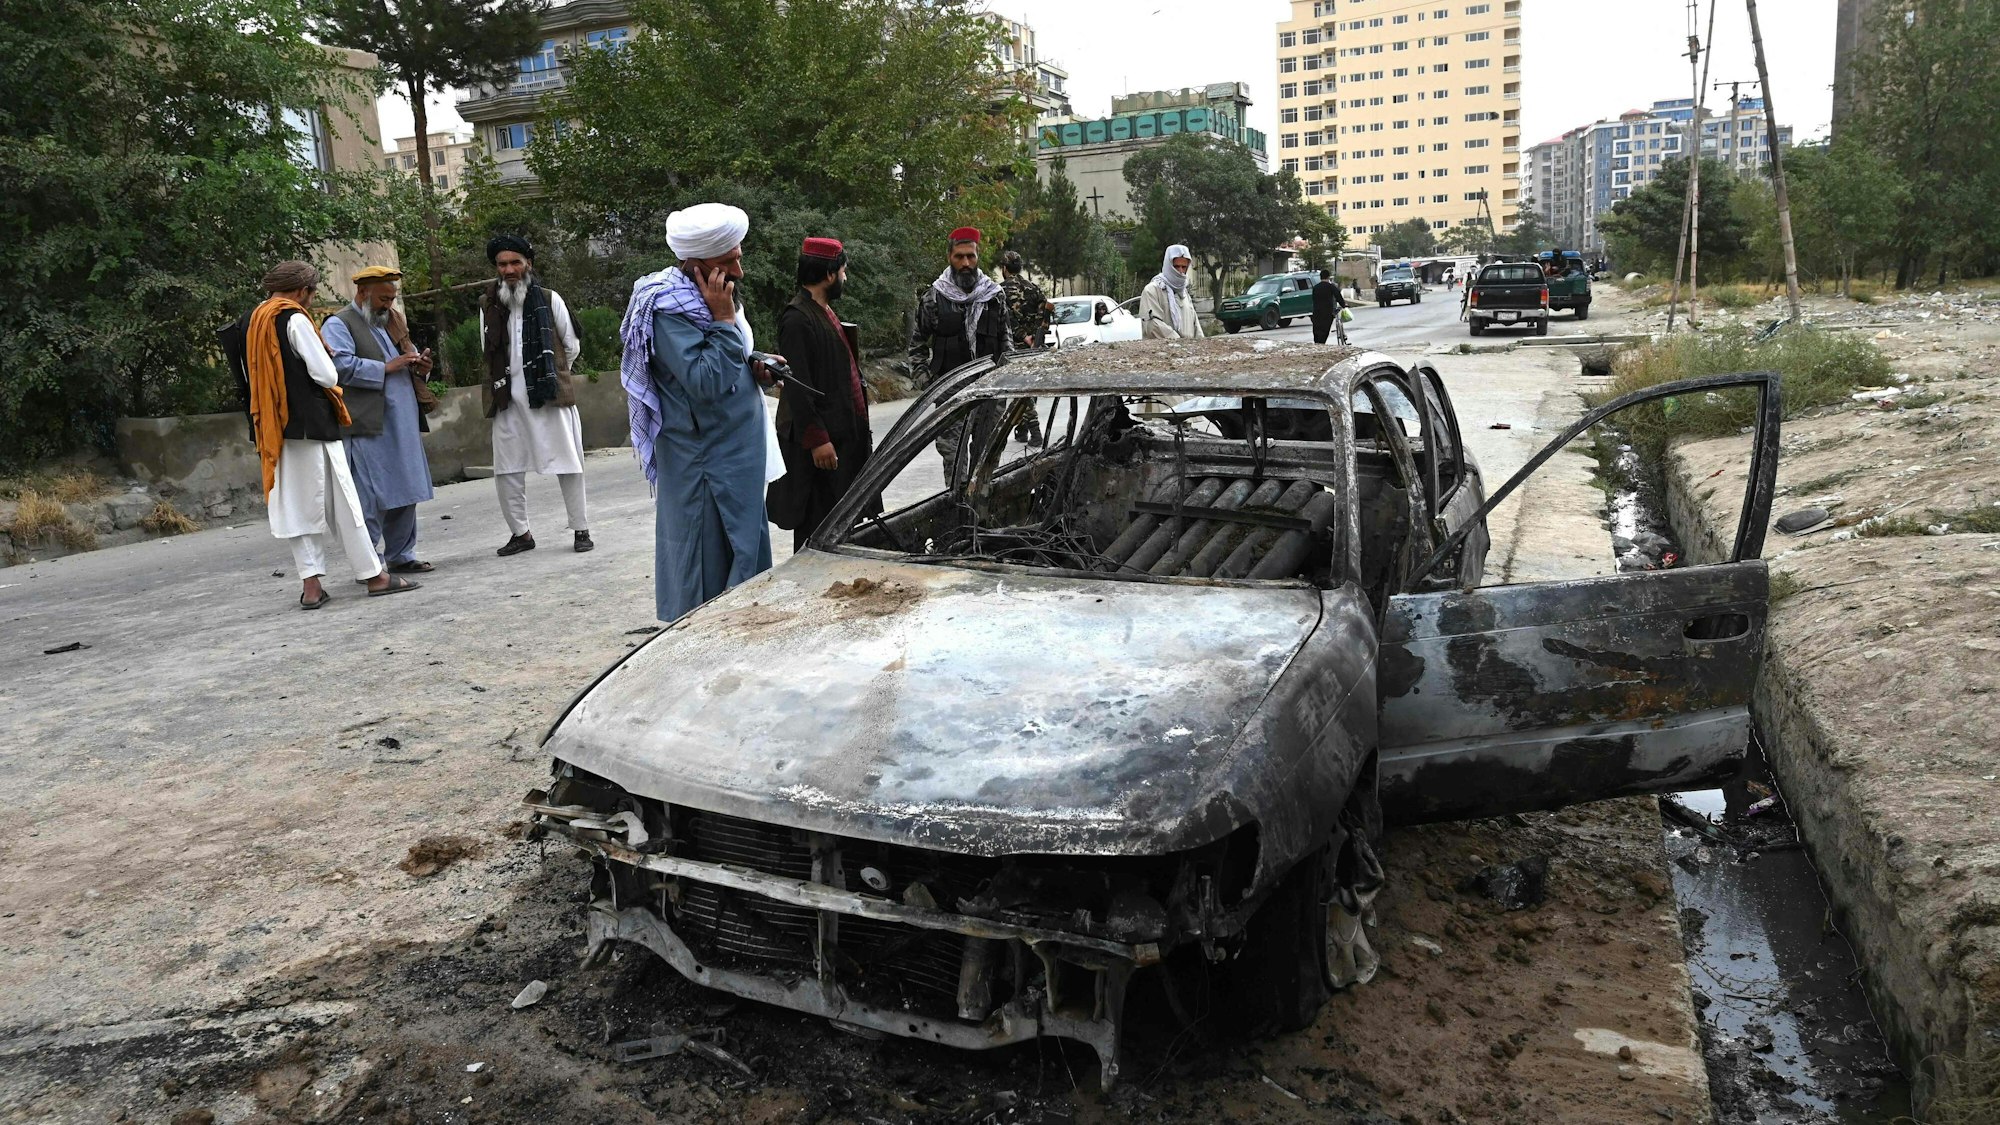 Menschen stehen an einem durch einen Raketenangriff beschädigtes Fahrzeug. In der afghanischen Hauptstadt Kabul hat es einem Medienbericht zufolge einen Raketenangriff gegeben.